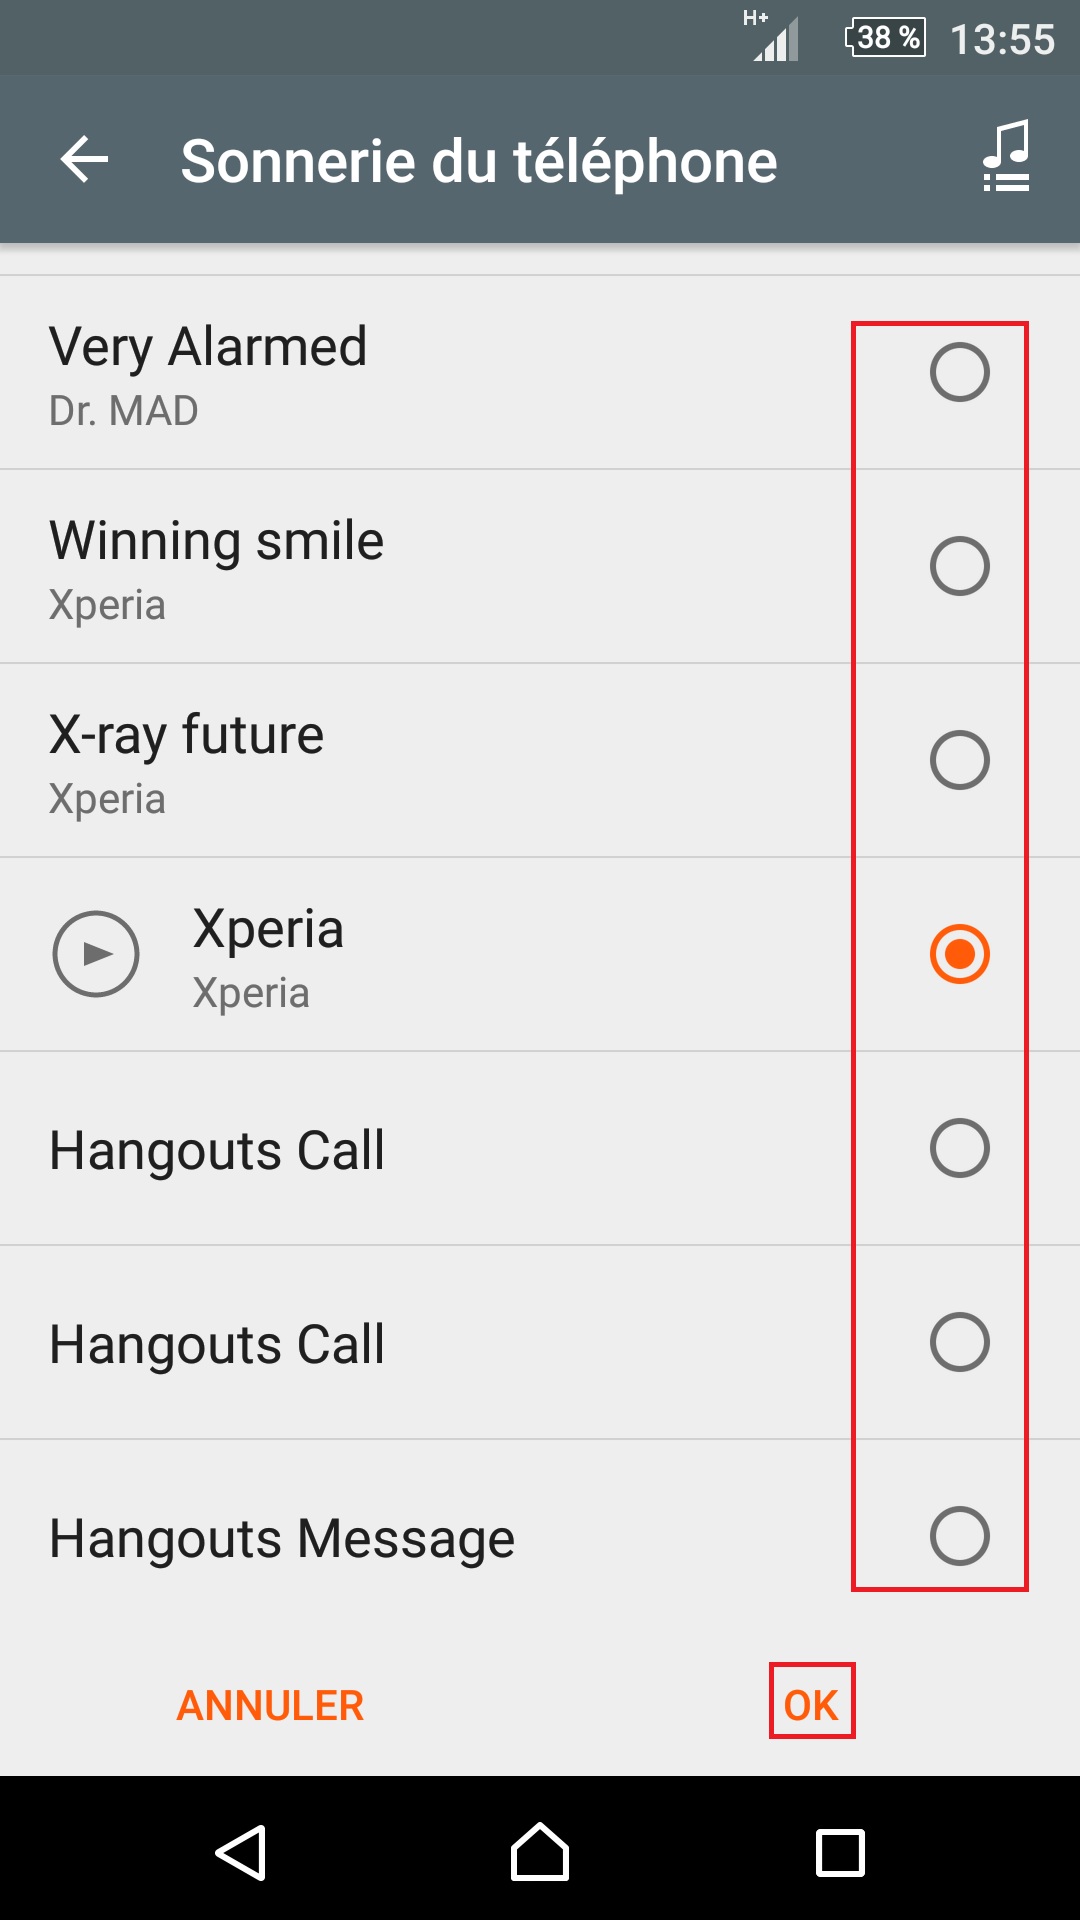 Personnaliser thème sonnerie et fond d'écran (Sony android 6.0) réglages son et notification choisir